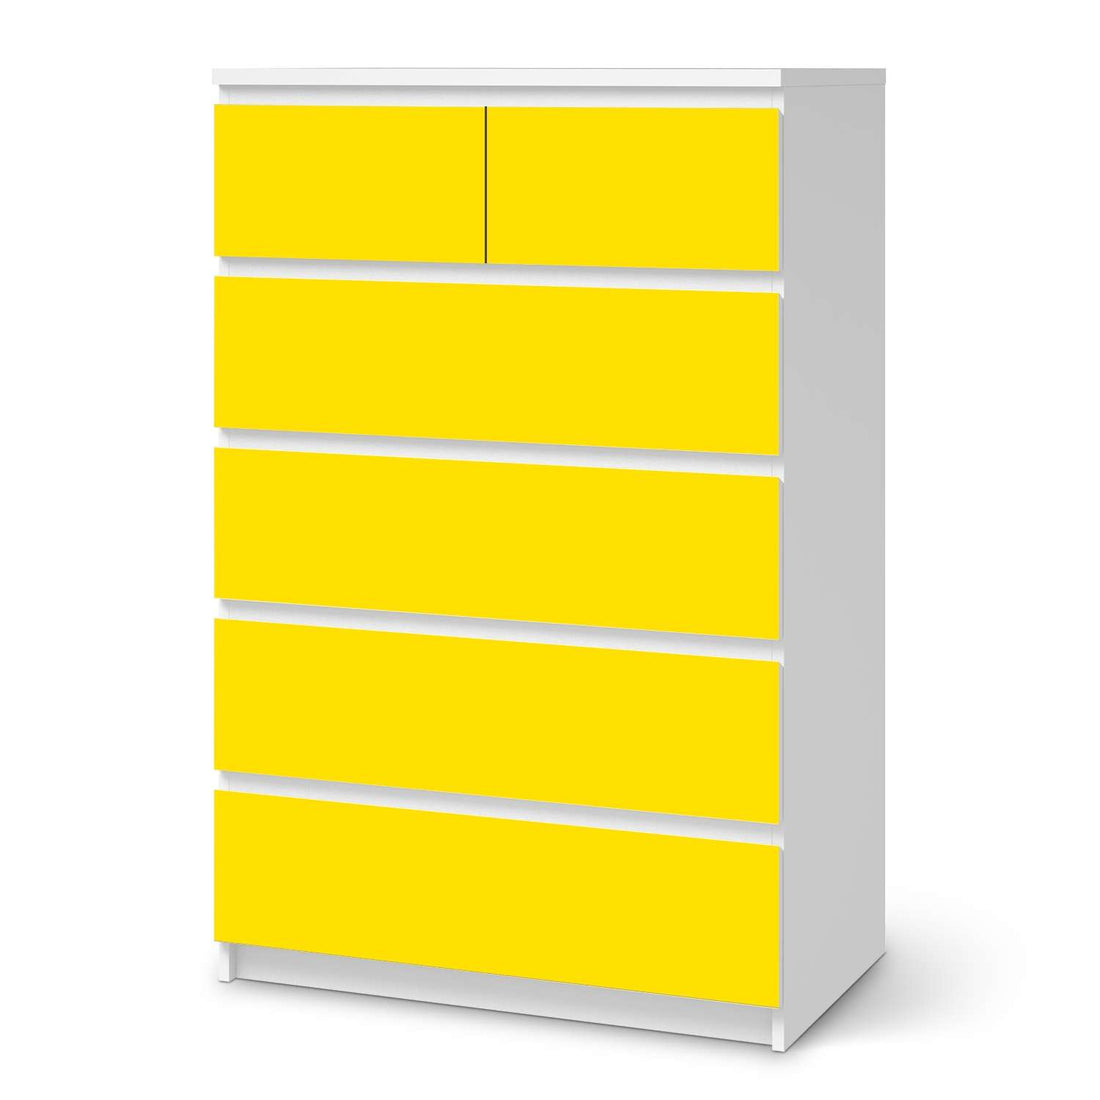 Möbel Klebefolie Gelb Dark - IKEA Malm Kommode 6 Schubladen (hoch)  - weiss